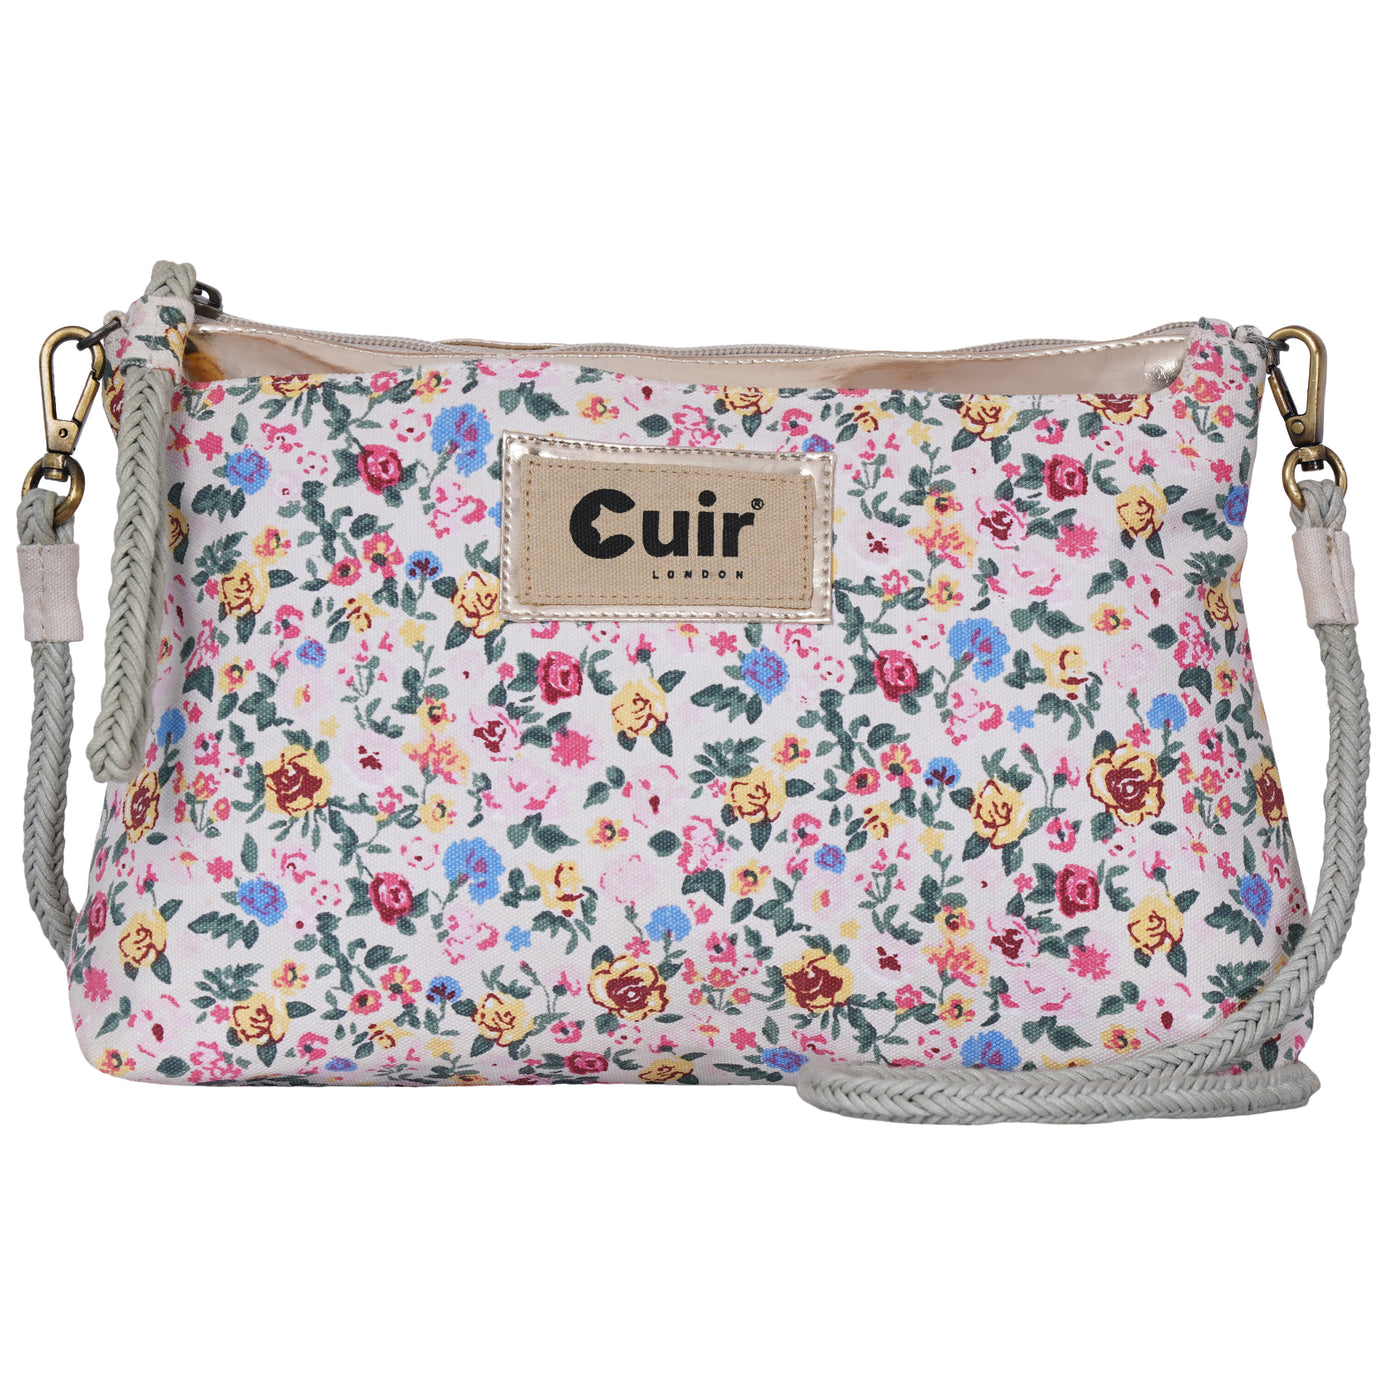 Flower Clutch Bag